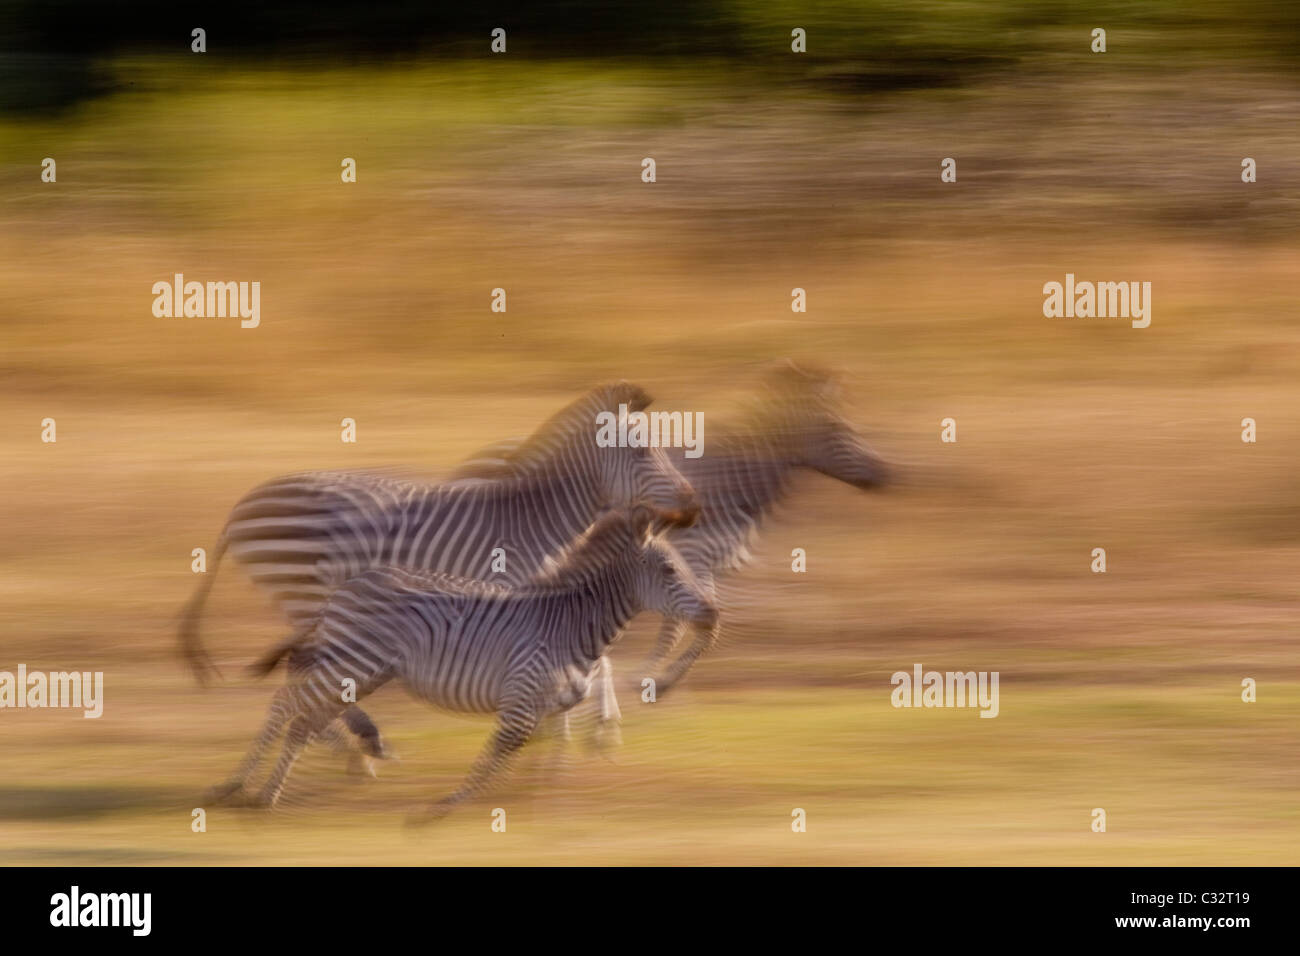 Running zebra Stock Photo